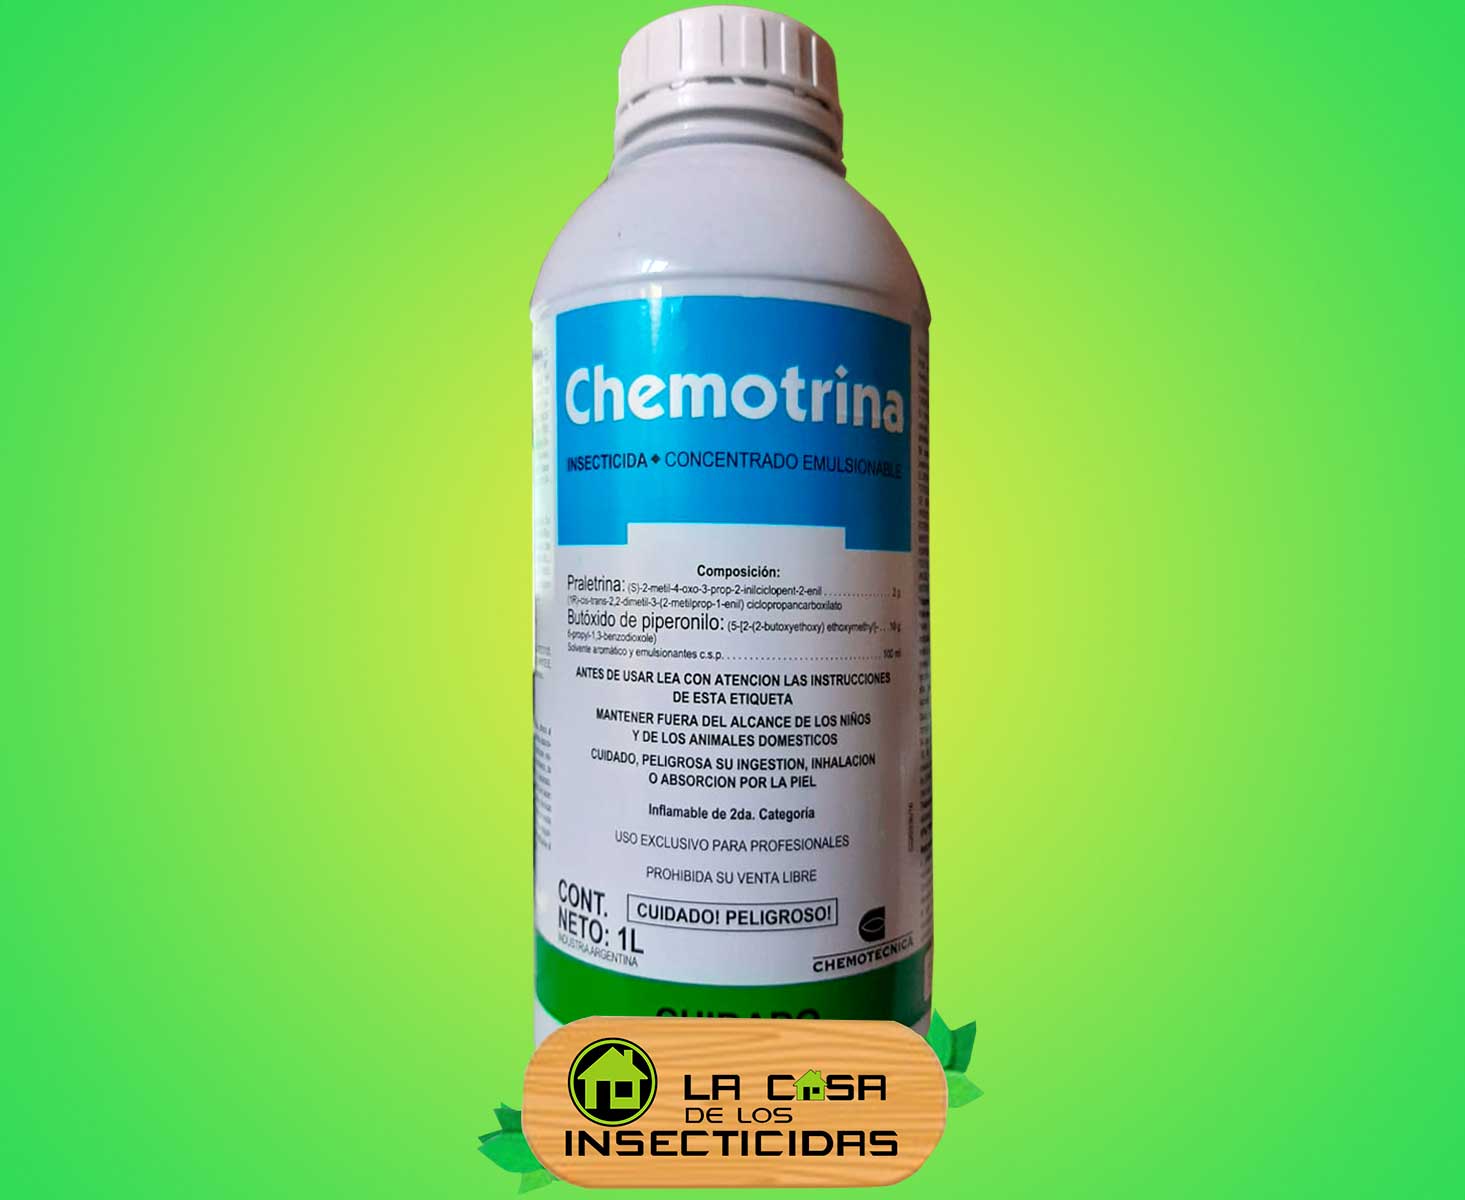 Chemotrina insecticida Fumigacion y Control de plagas